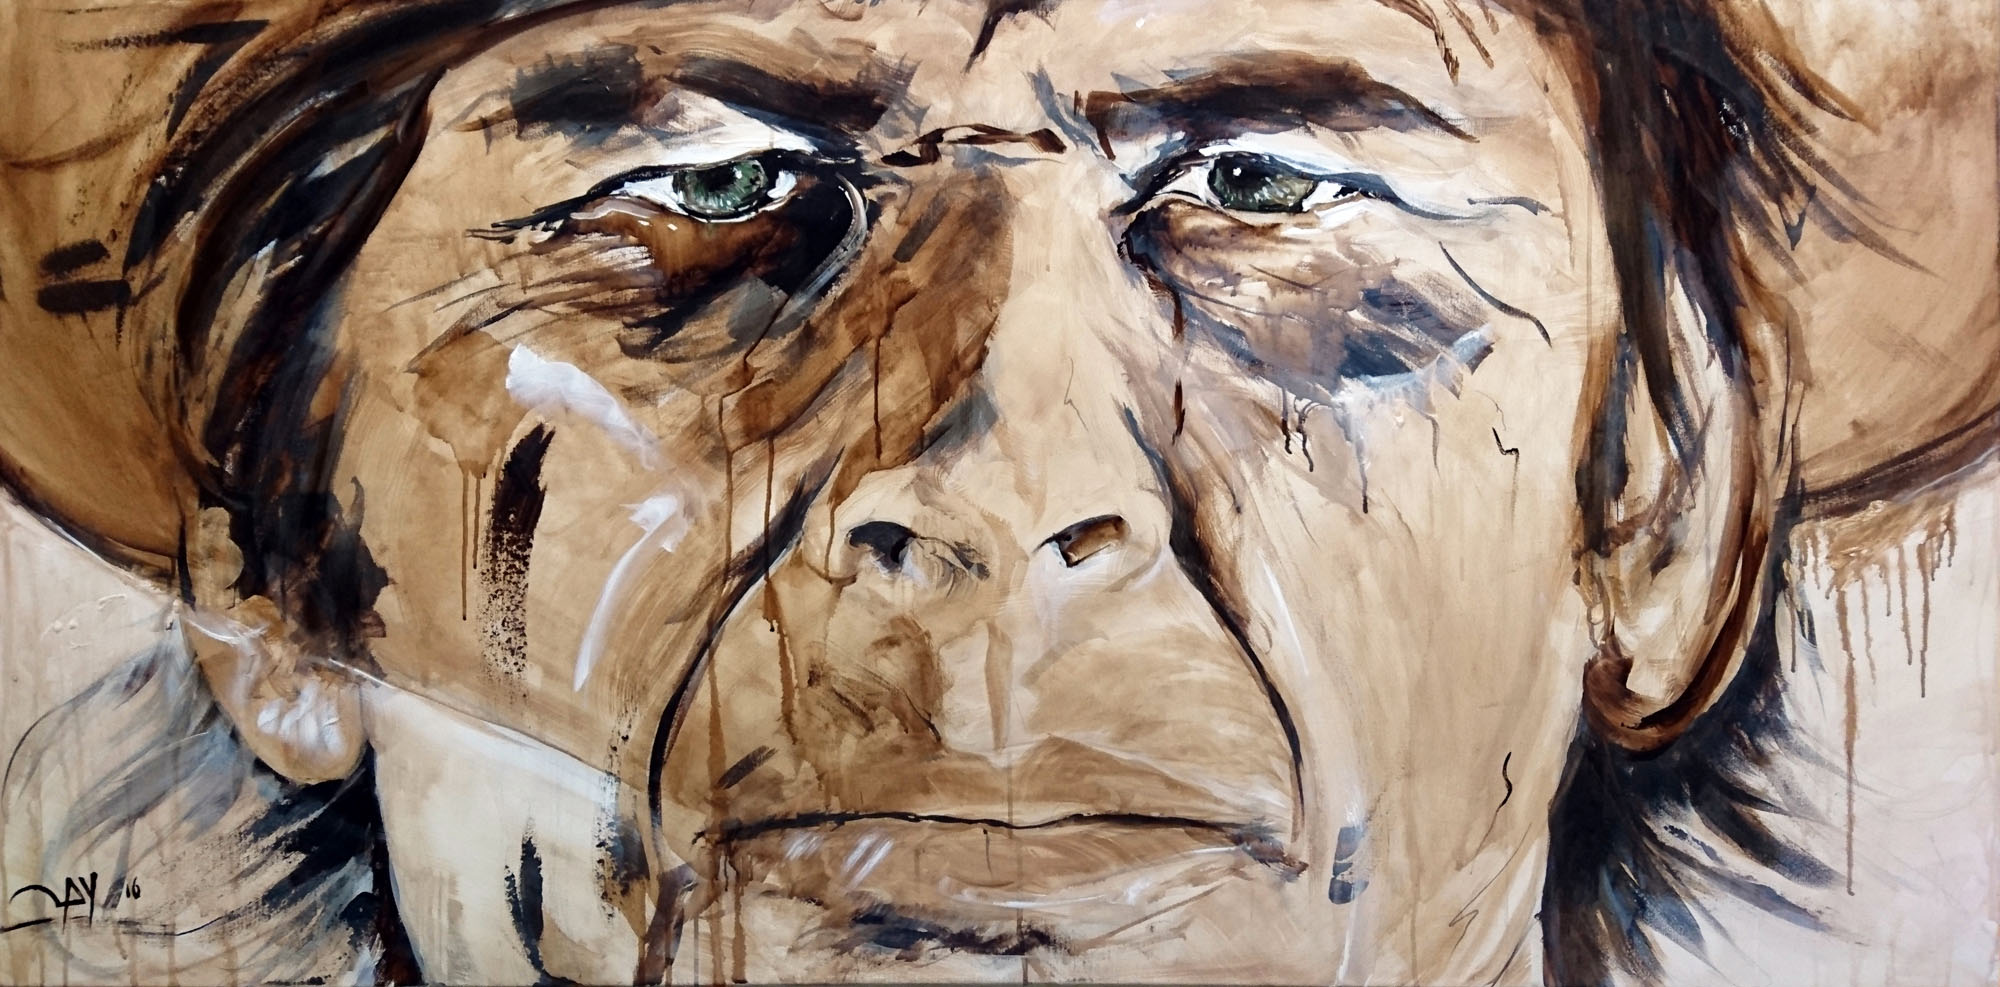 Acrylbild "Charles Bronson" 160 x 80 cm